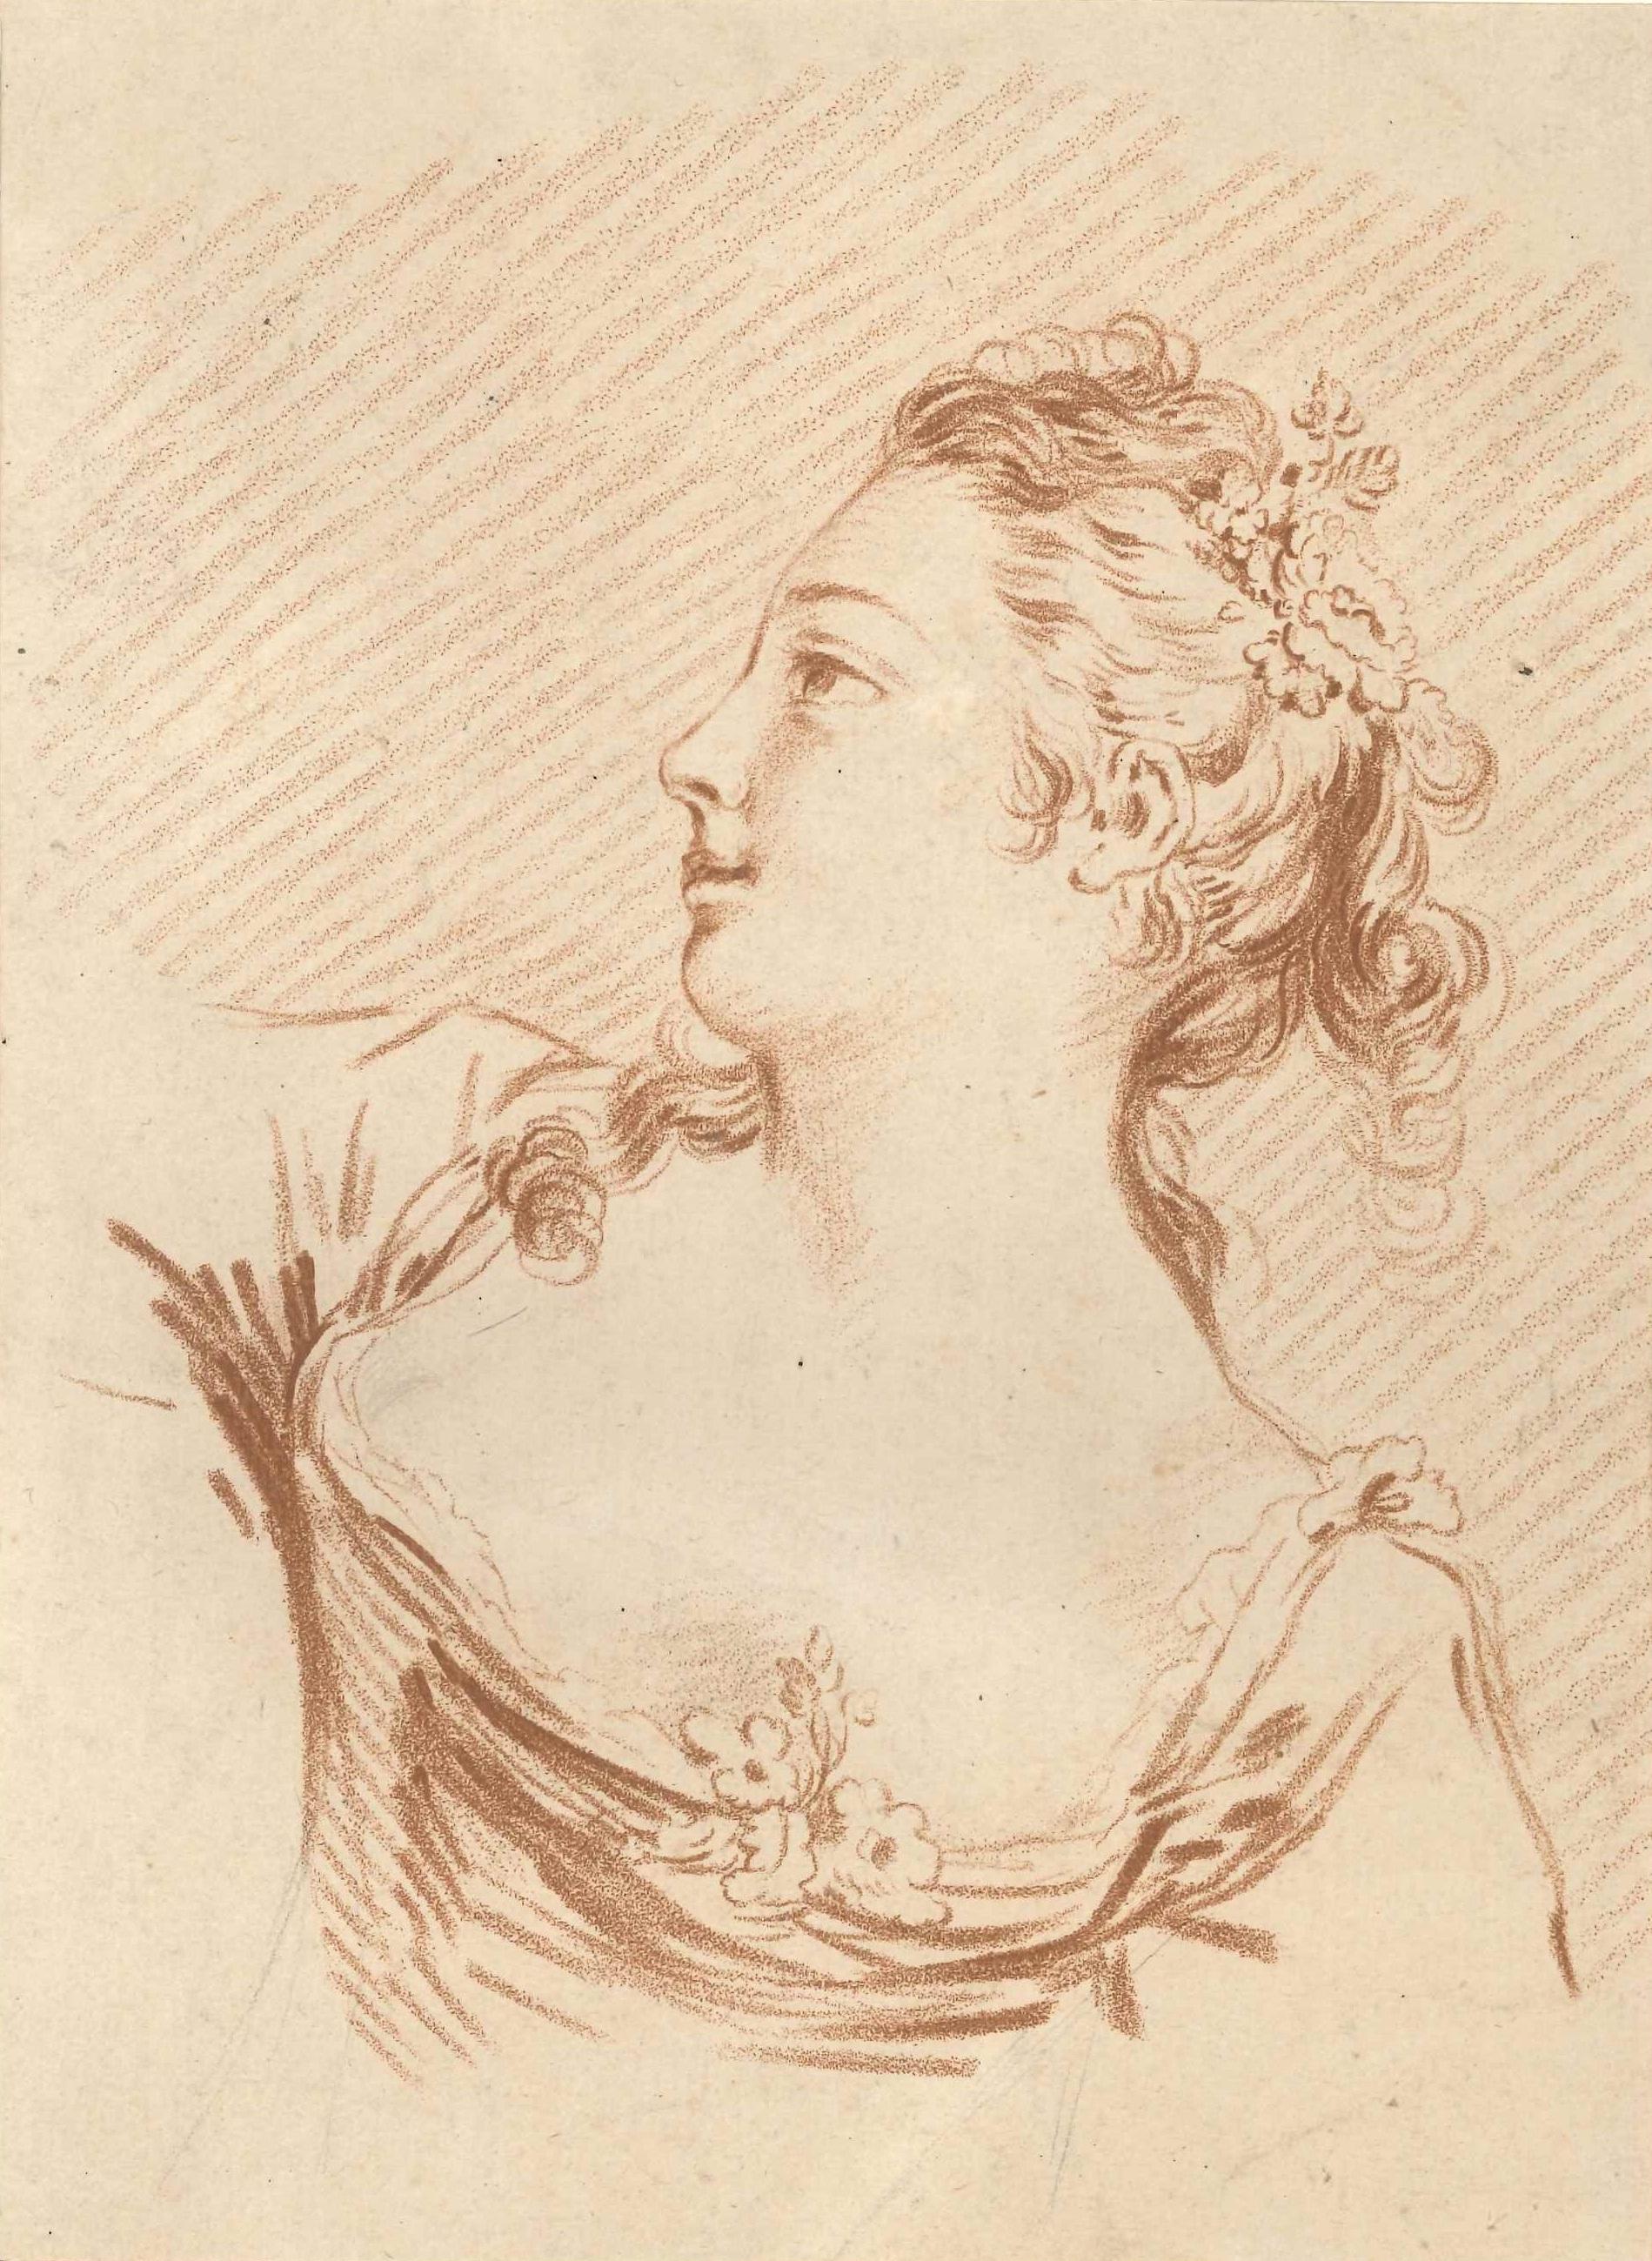 Louis-Marin Bonnet Portrait Print - Feme Portrait - Original Lithograph by L-M Bonnet - End of 18th Century